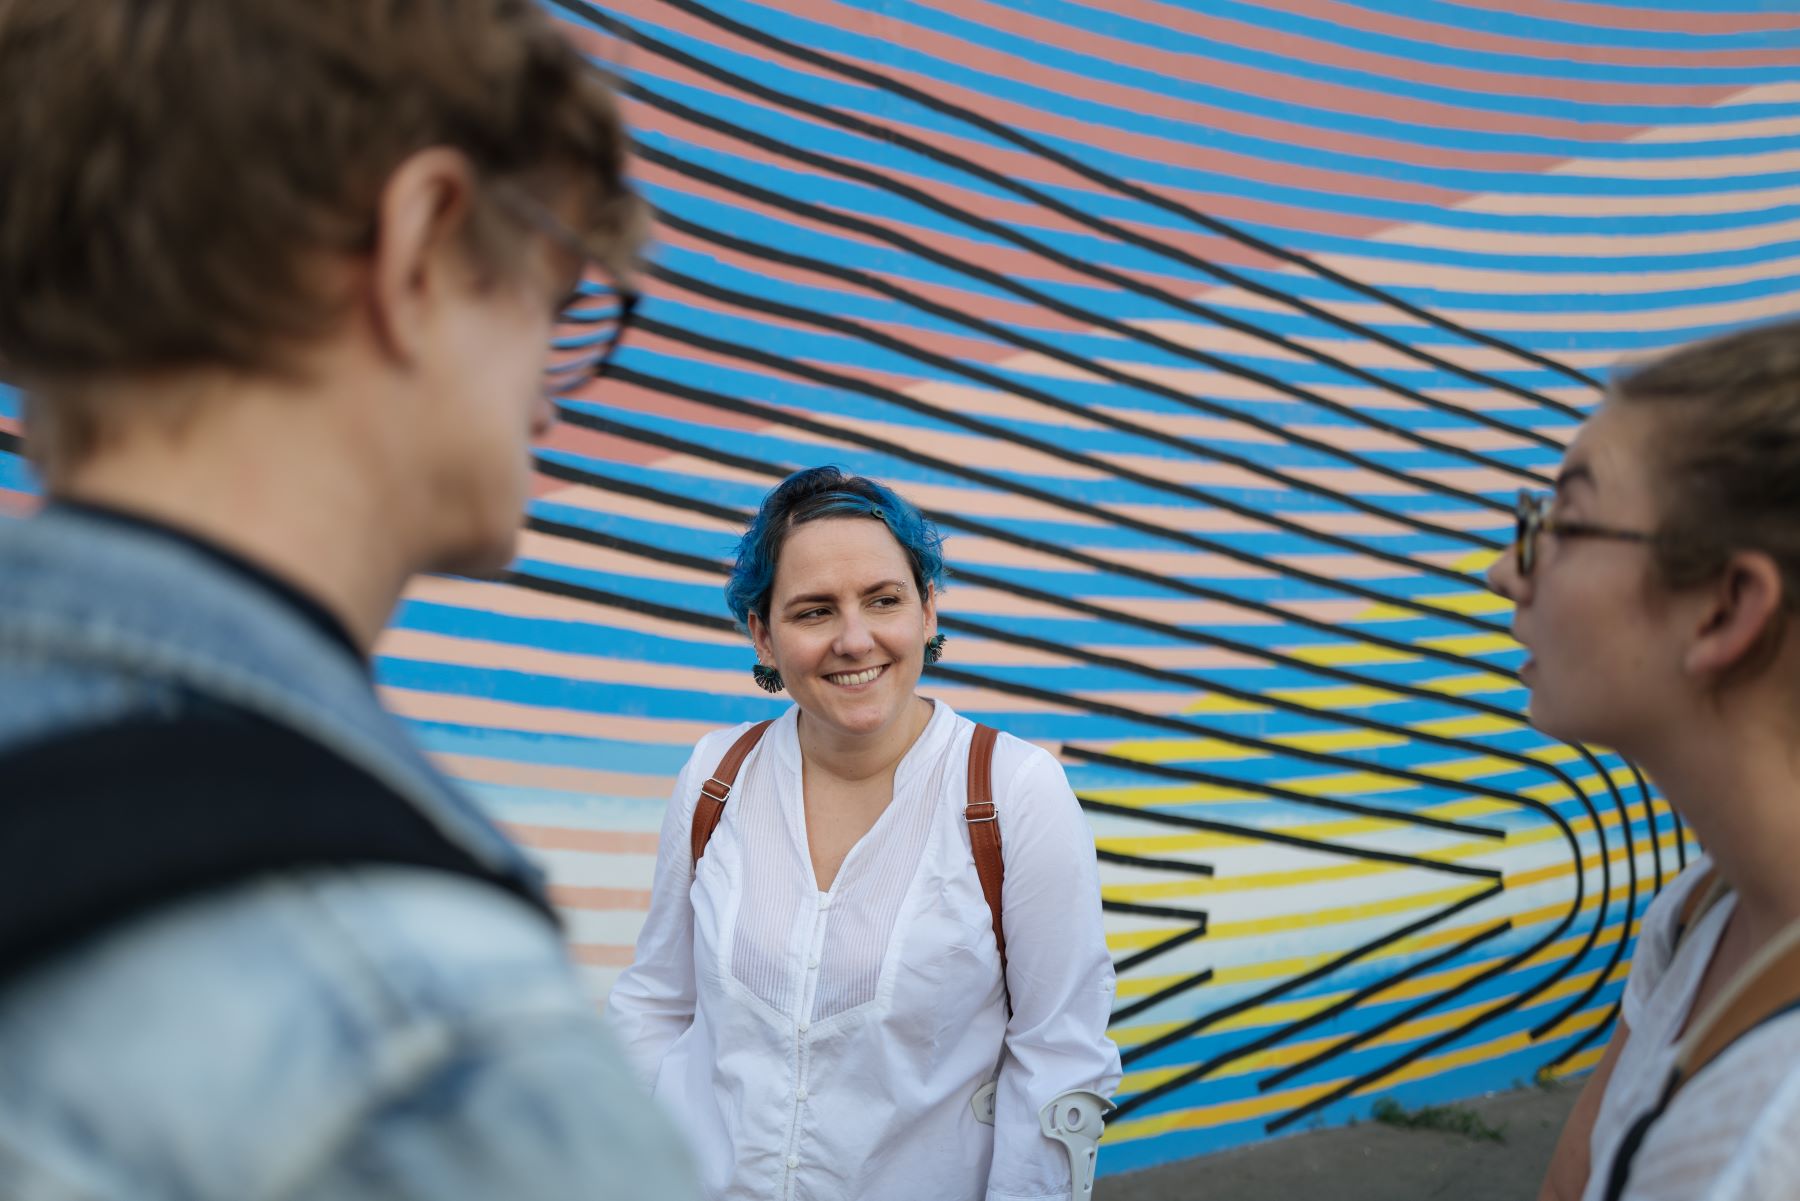 La guide touristique discute avec ses invités devant un grand mur peint à Nancy. La guide a des cheveux bleus qui s'accordent avec les tons bleus du mur derrière elle.